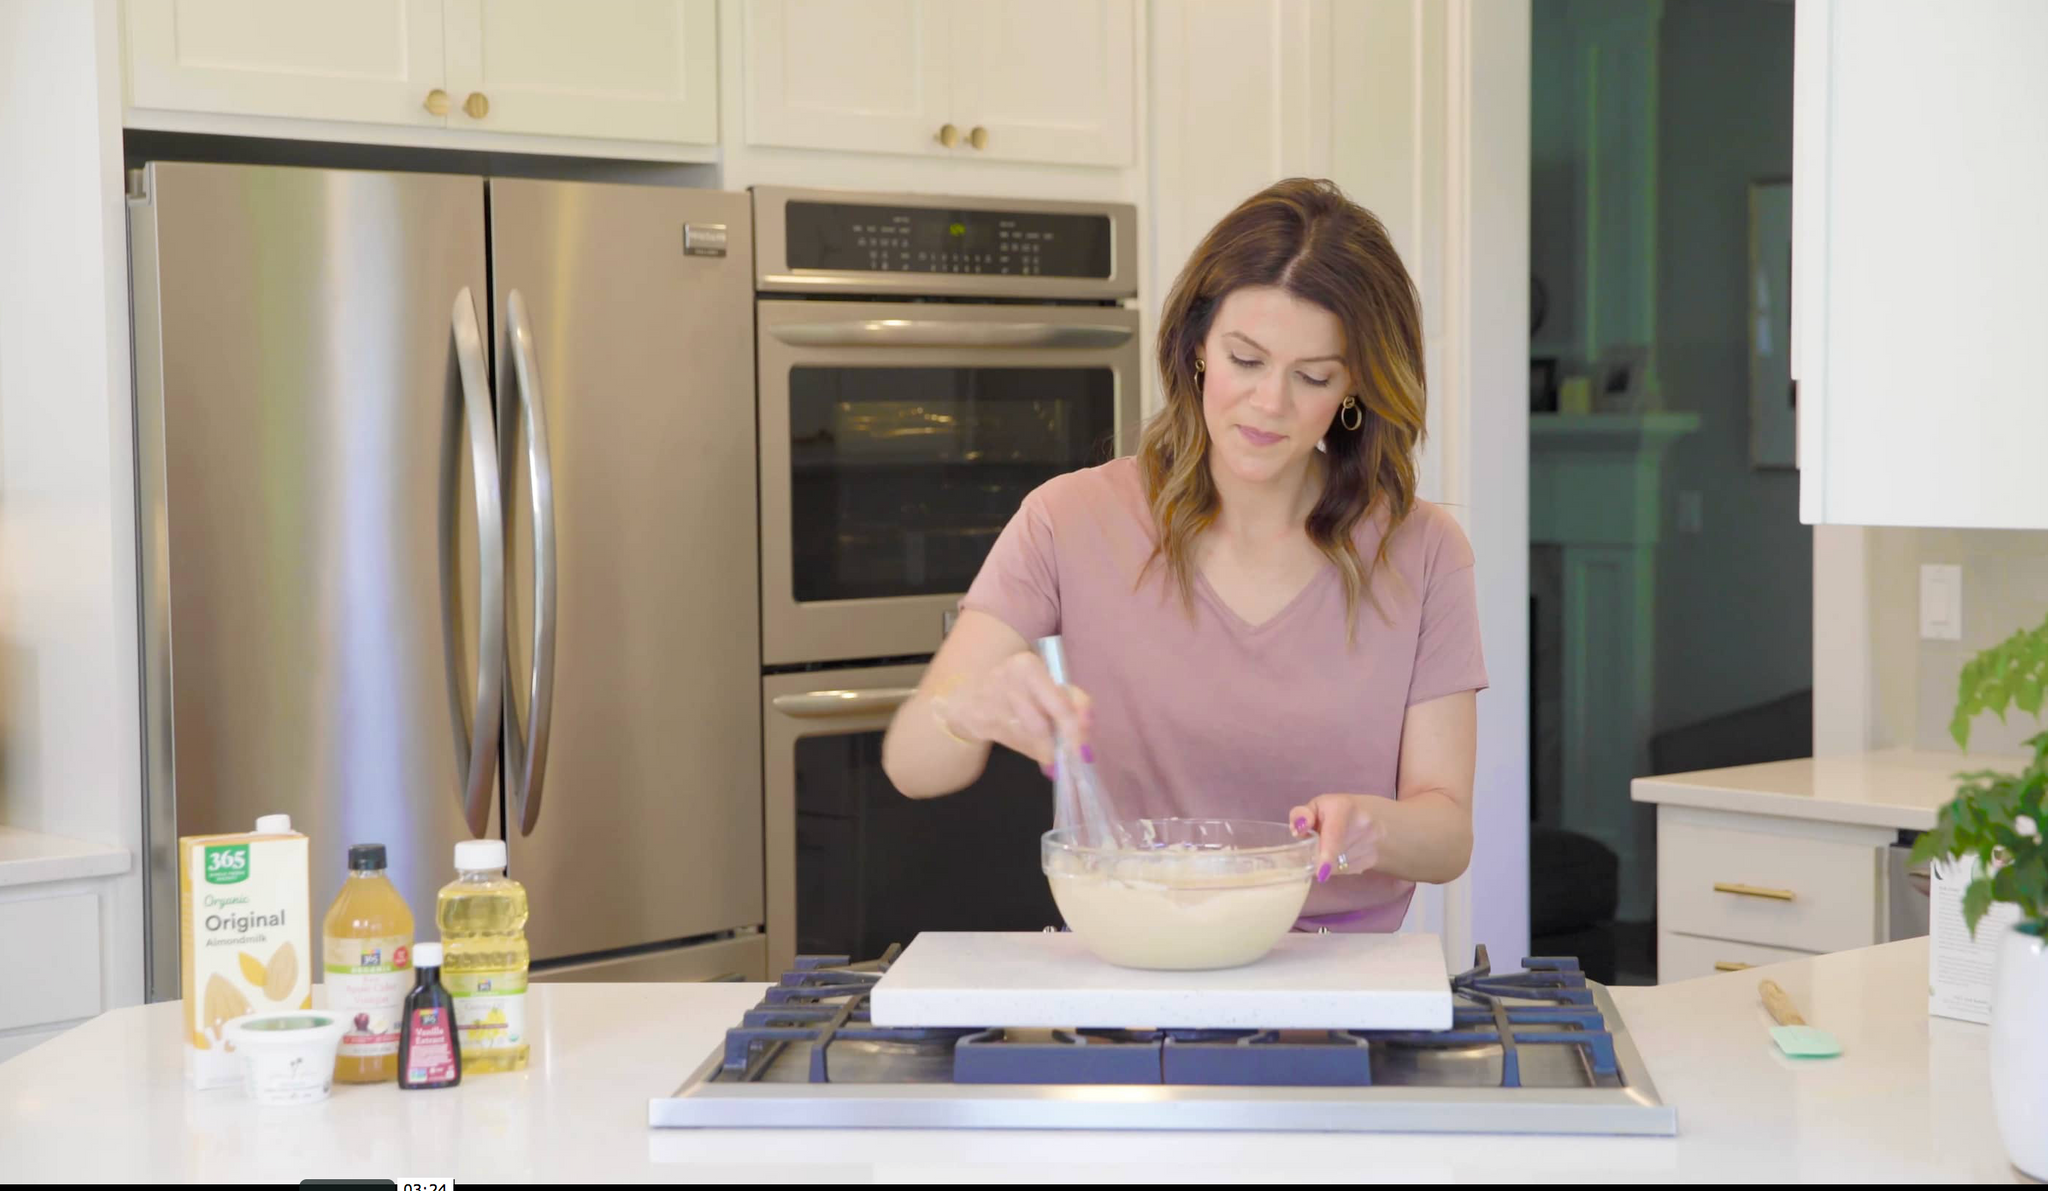 VIDEO SERIES: Baking at home with Lisa-Vanilla Cupcakes